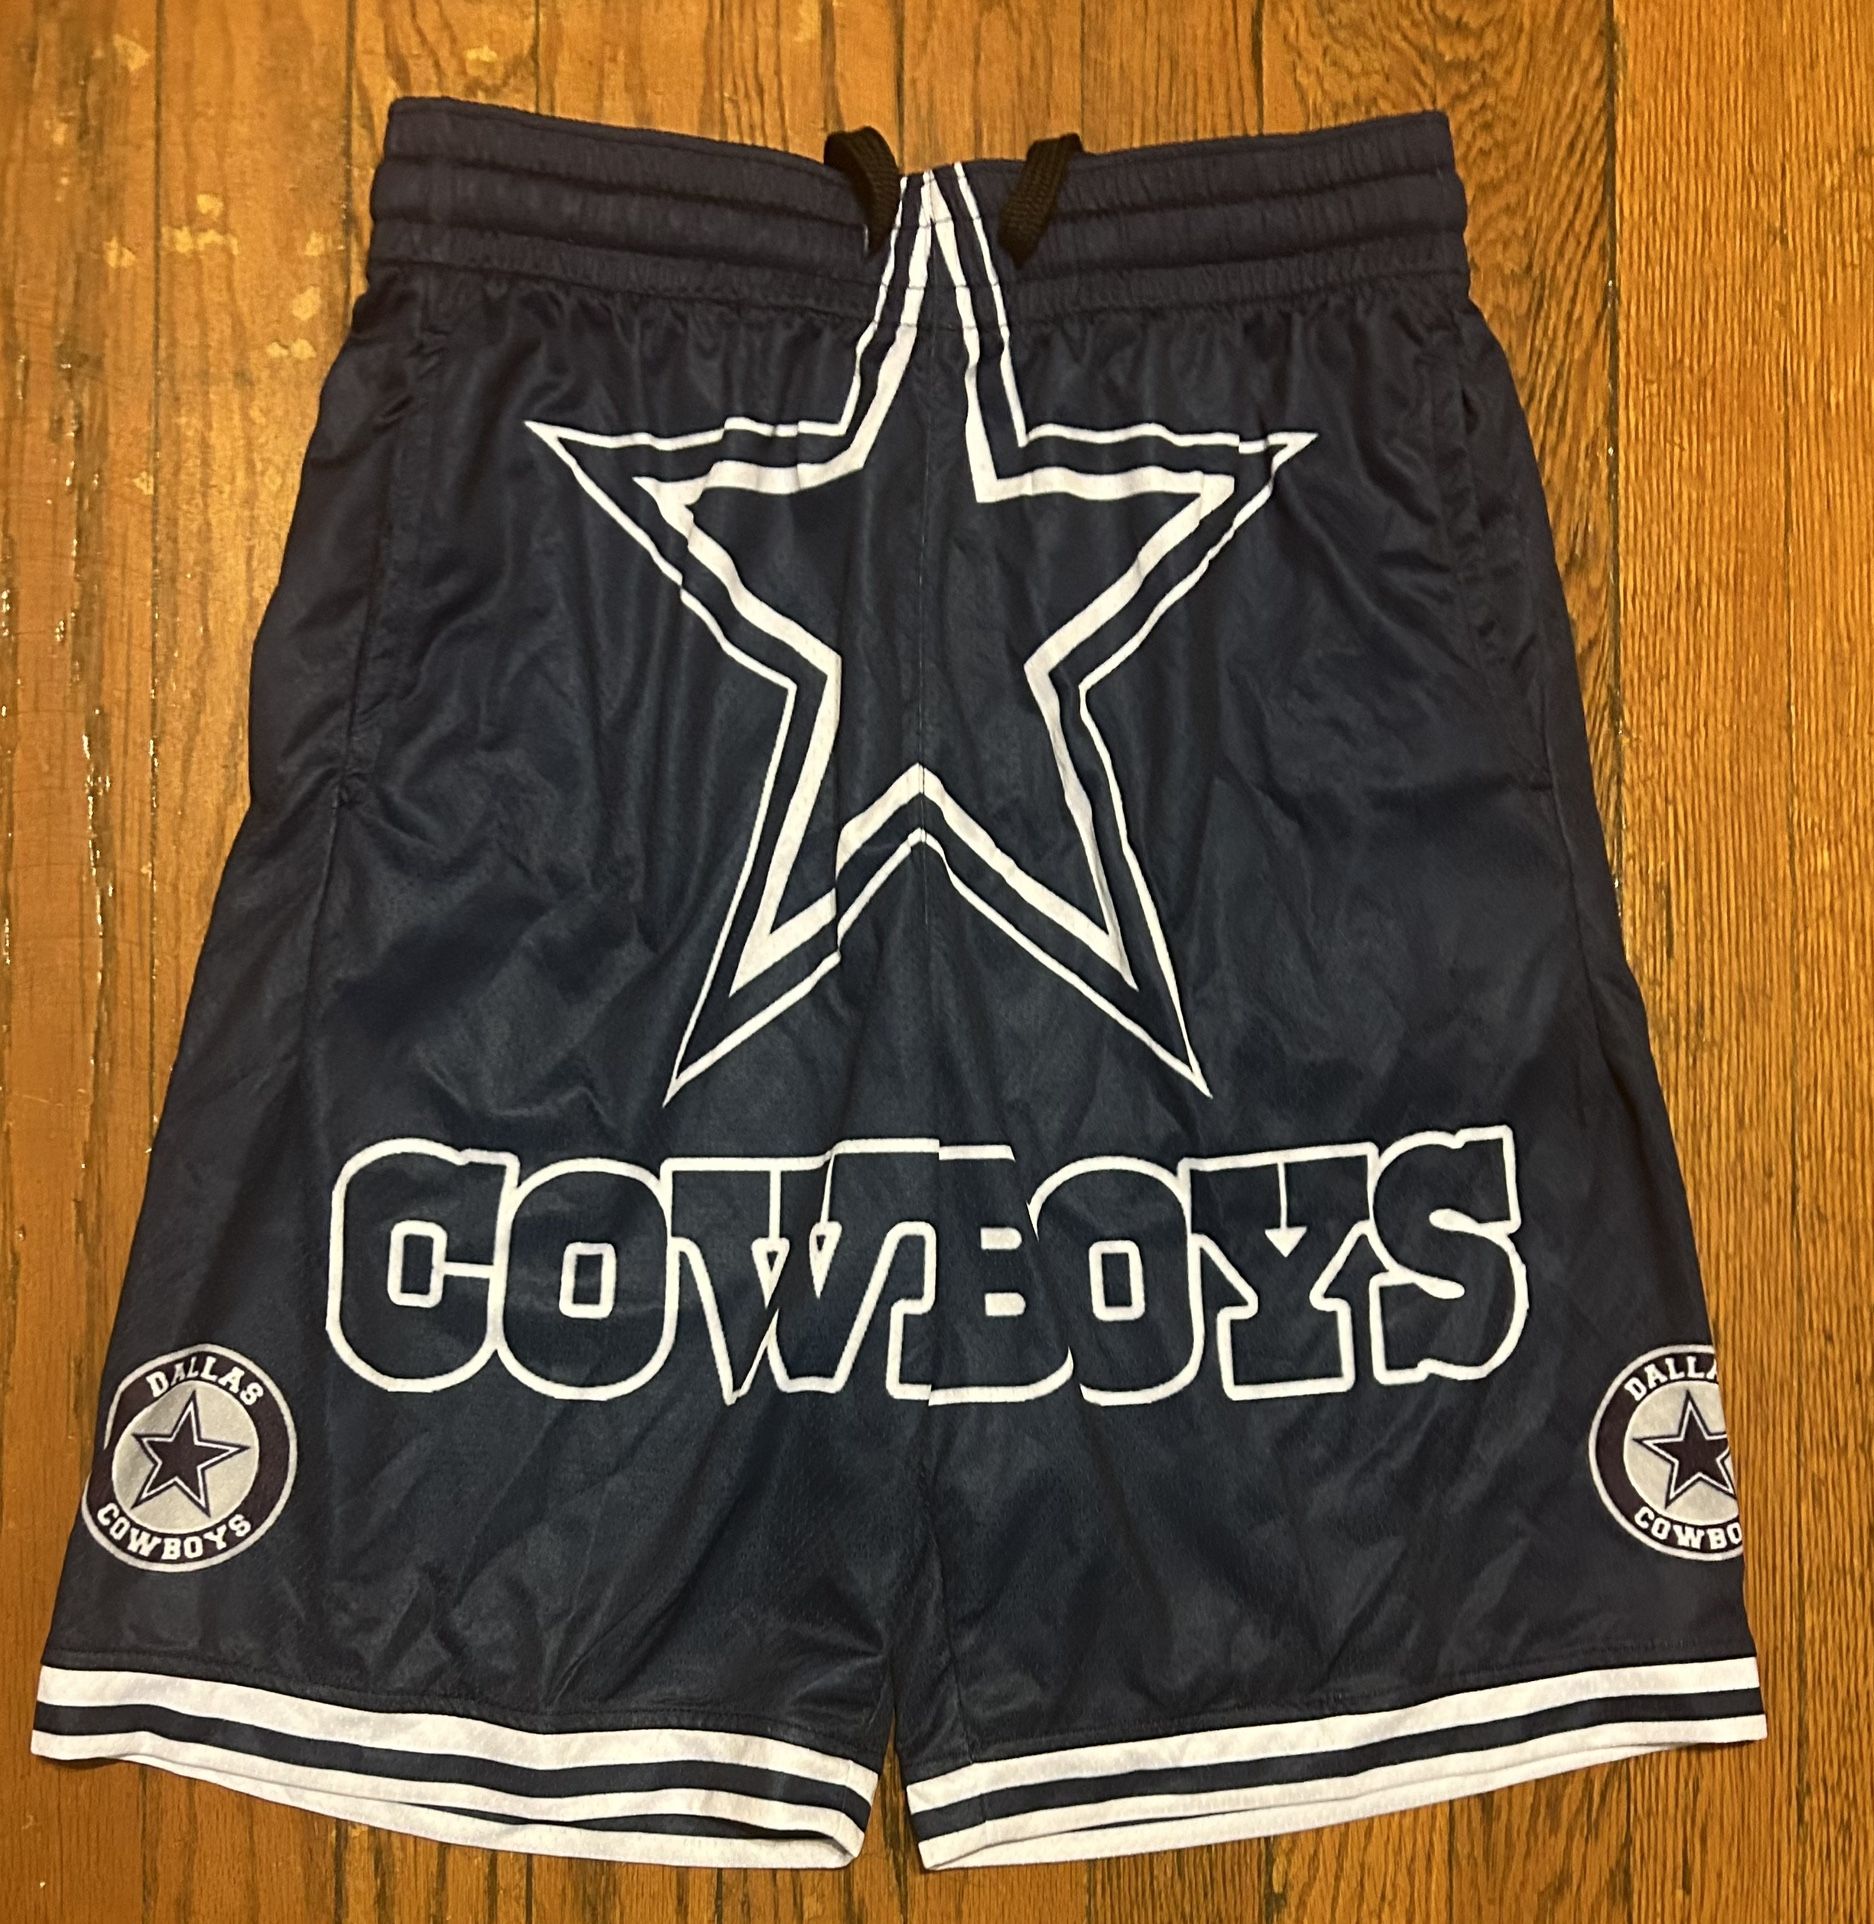 Dallas Cowboys Men’s S Shorts athletic 